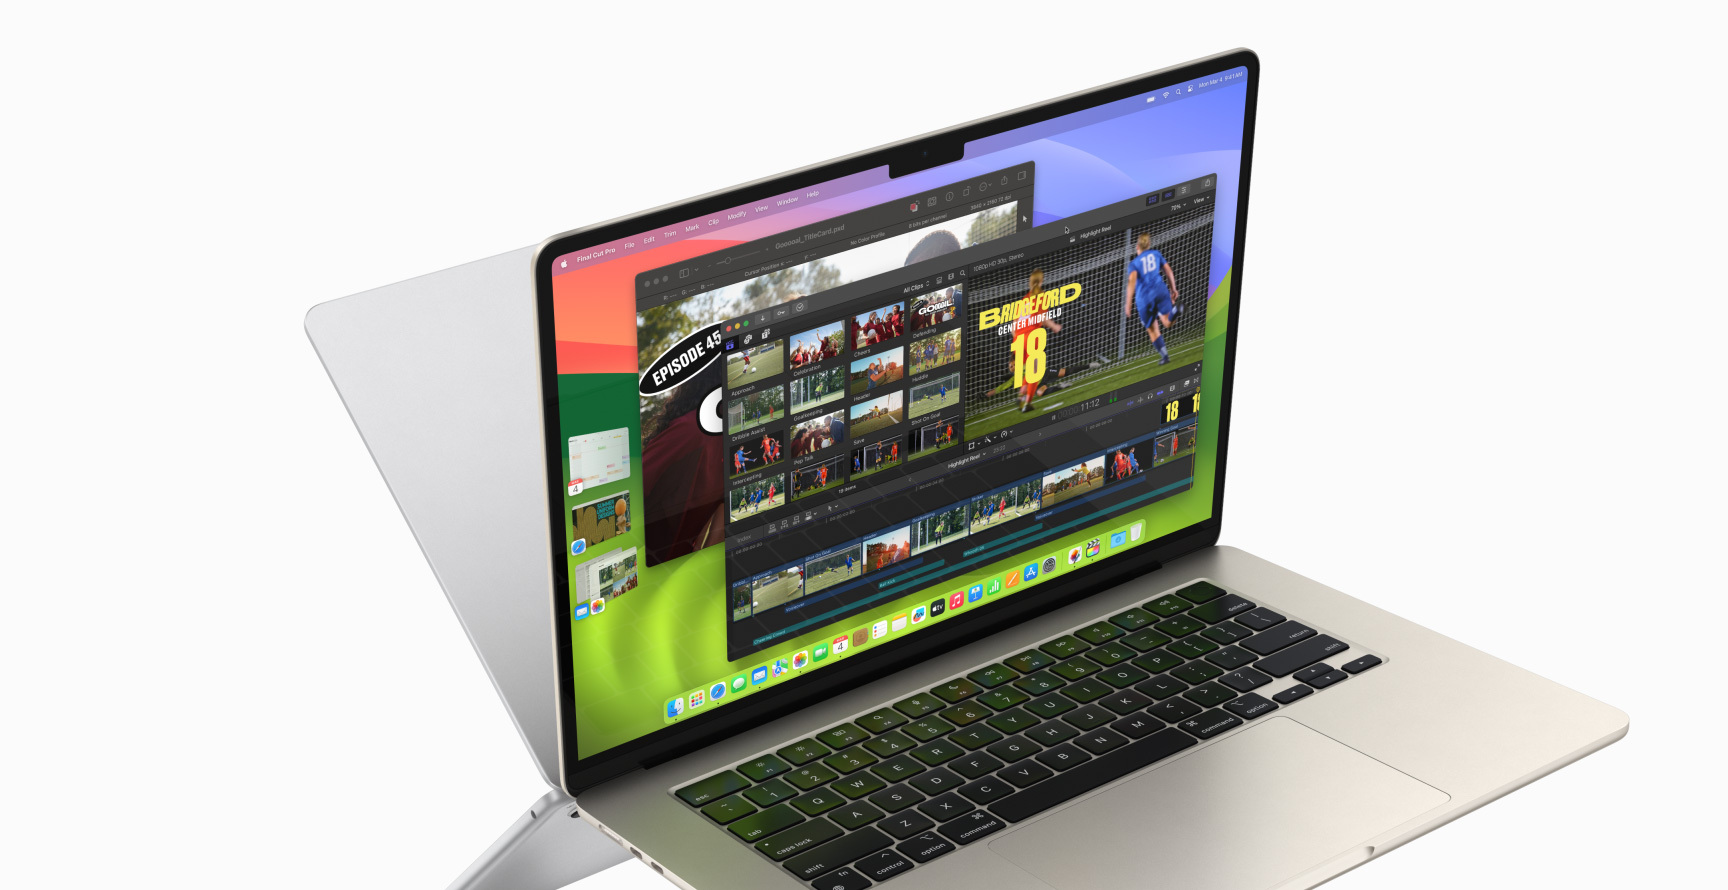 Un MacBook Air abierto muestra Final Cut Pro y Pixelmator Pro, con las apps Calendario, Safari, Mail y Fotos a la izquierda. La parte trasera de un segundo MacBook Pro aparece detrás del primero a modo de espejo.